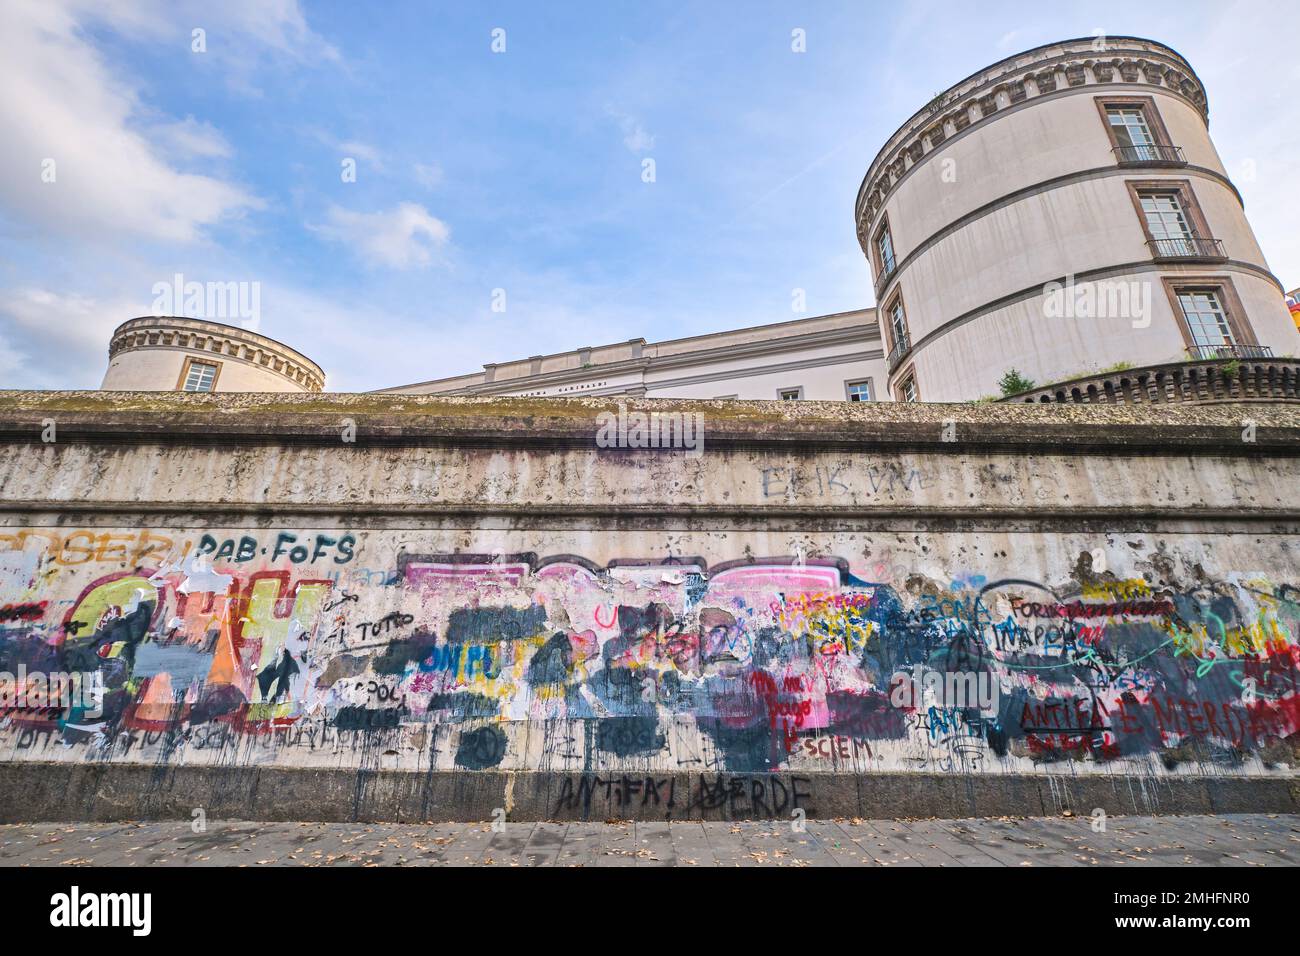 Die Außenwand der Kaserma GaribaIdi-Kaserne, bedeckt mit markierten Wörtern, schmutzige Schichten. Ein Beispiel für Graffiti in Neapel, Neapel, Italien, Ital Stockfoto